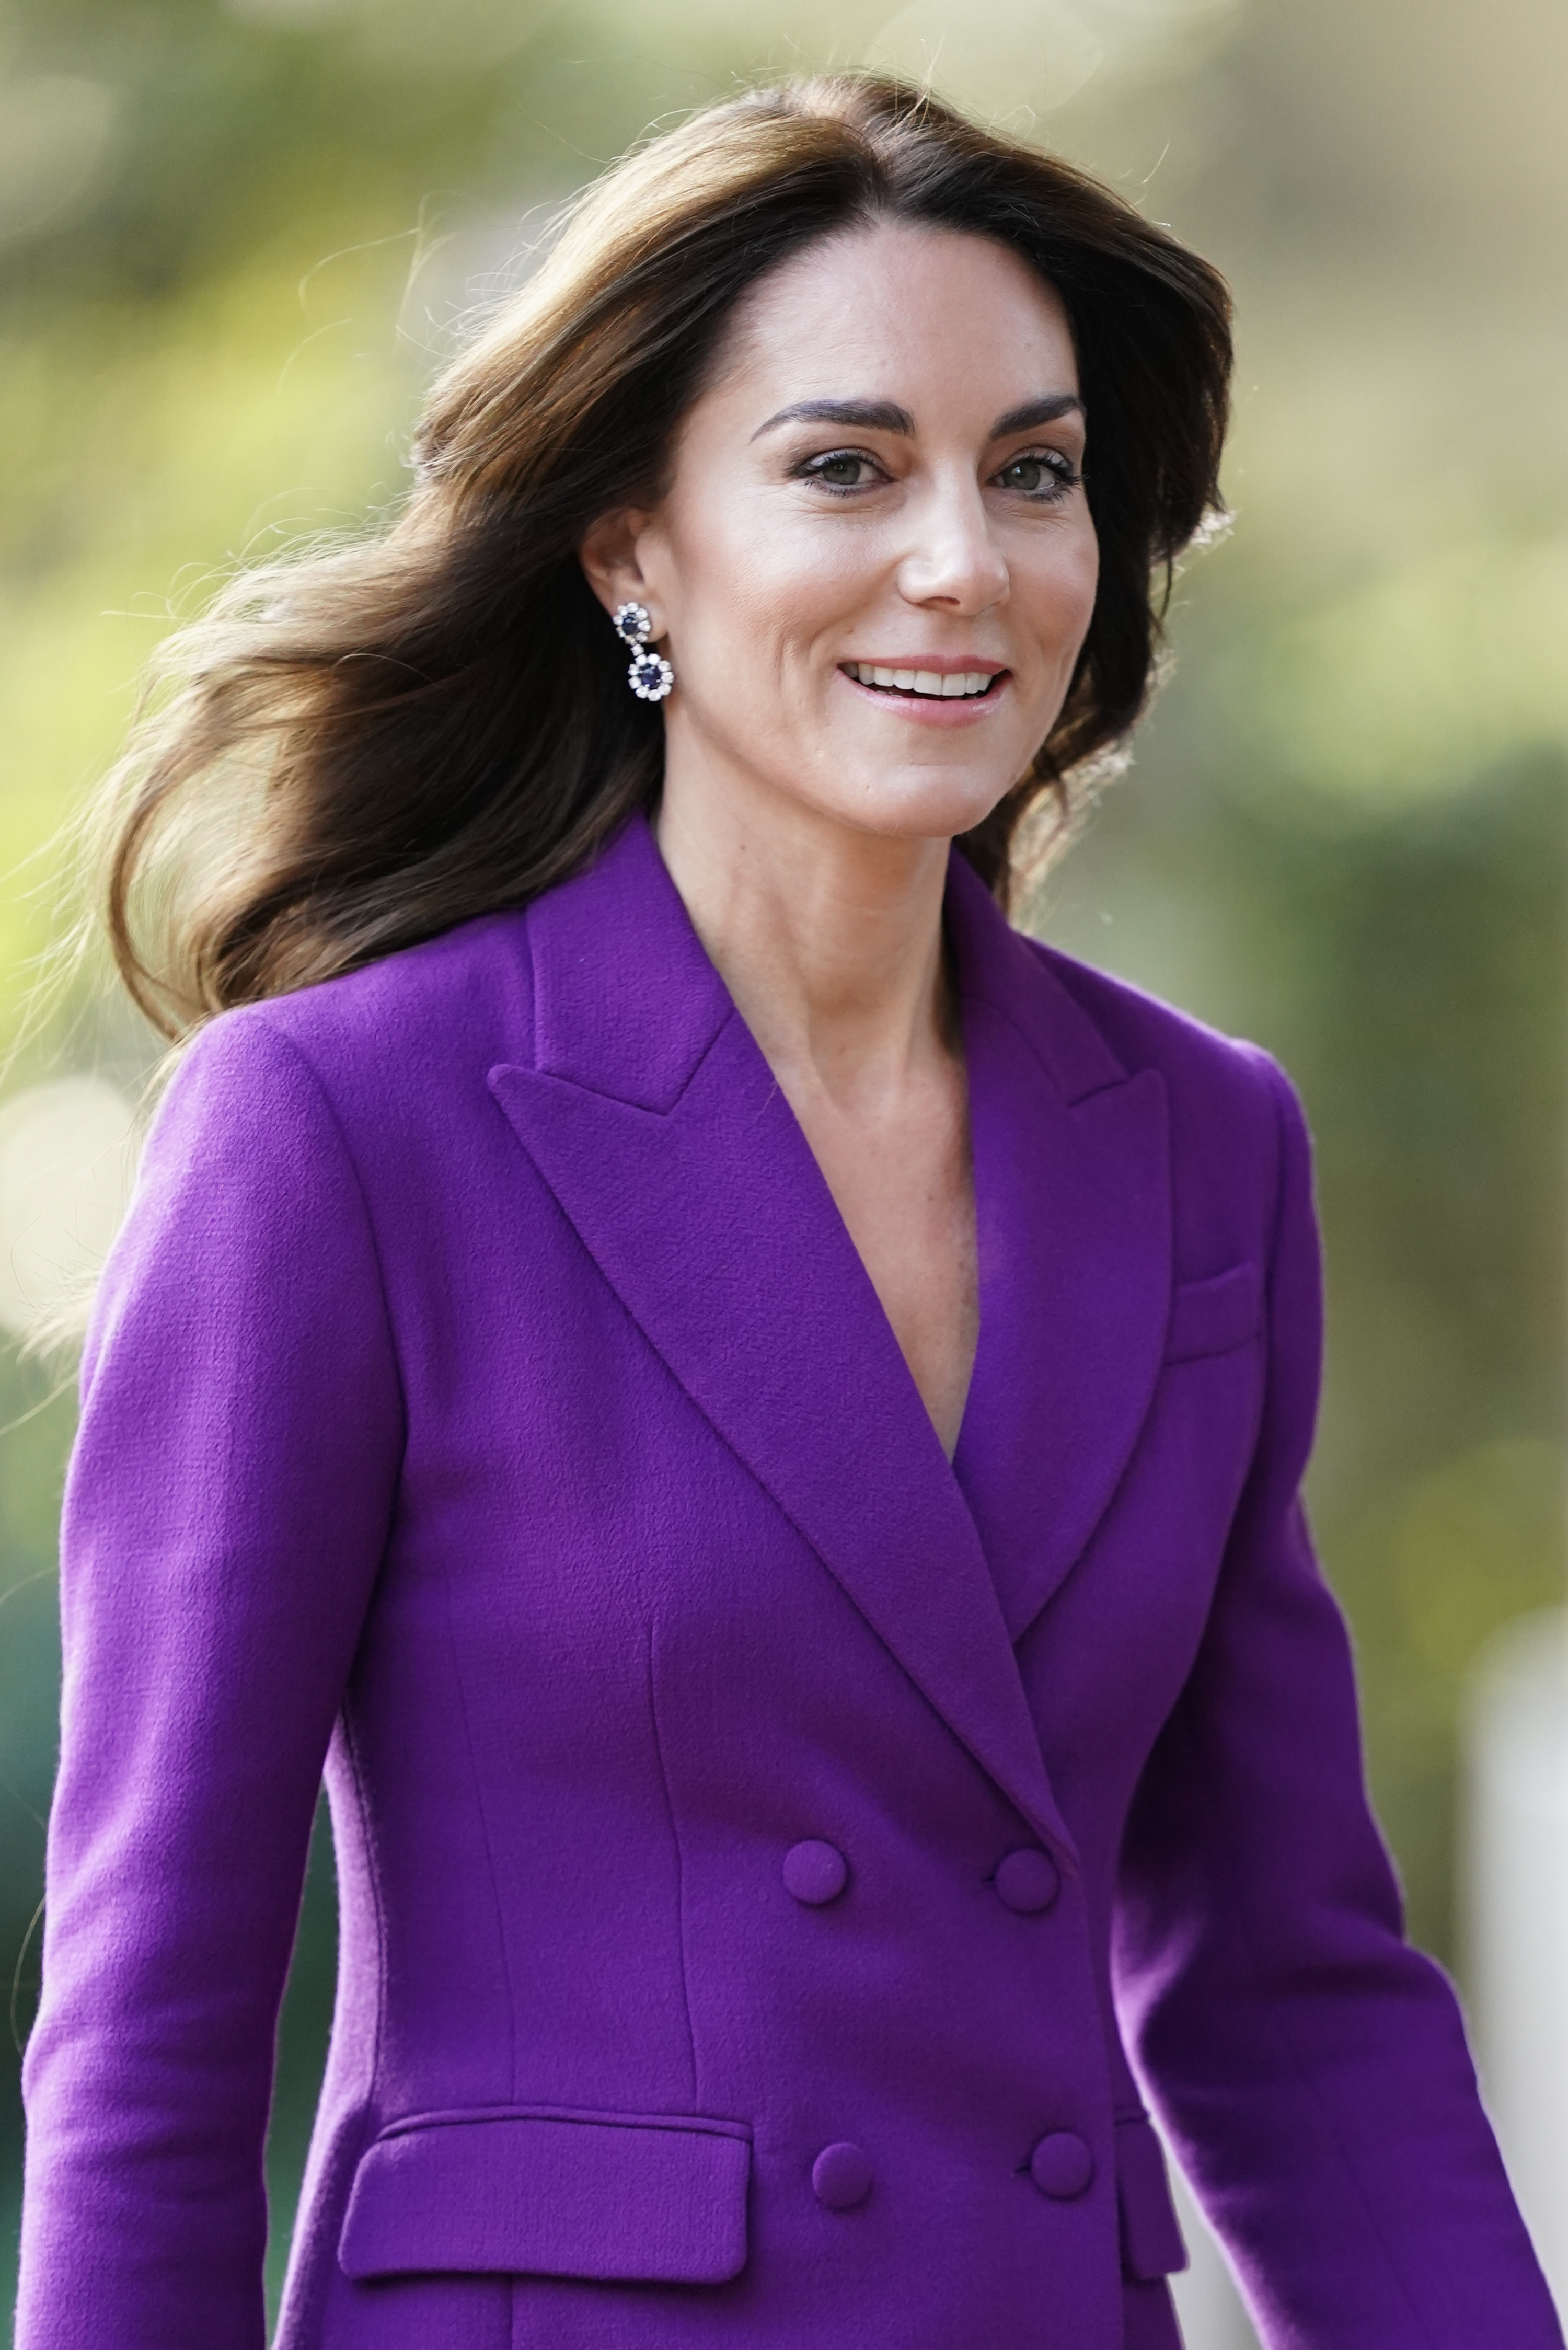 Kate Middleton fête ses 42 ans aujourd'hui et passerait la journée dans sa maison d'enfance à Bucklebury.